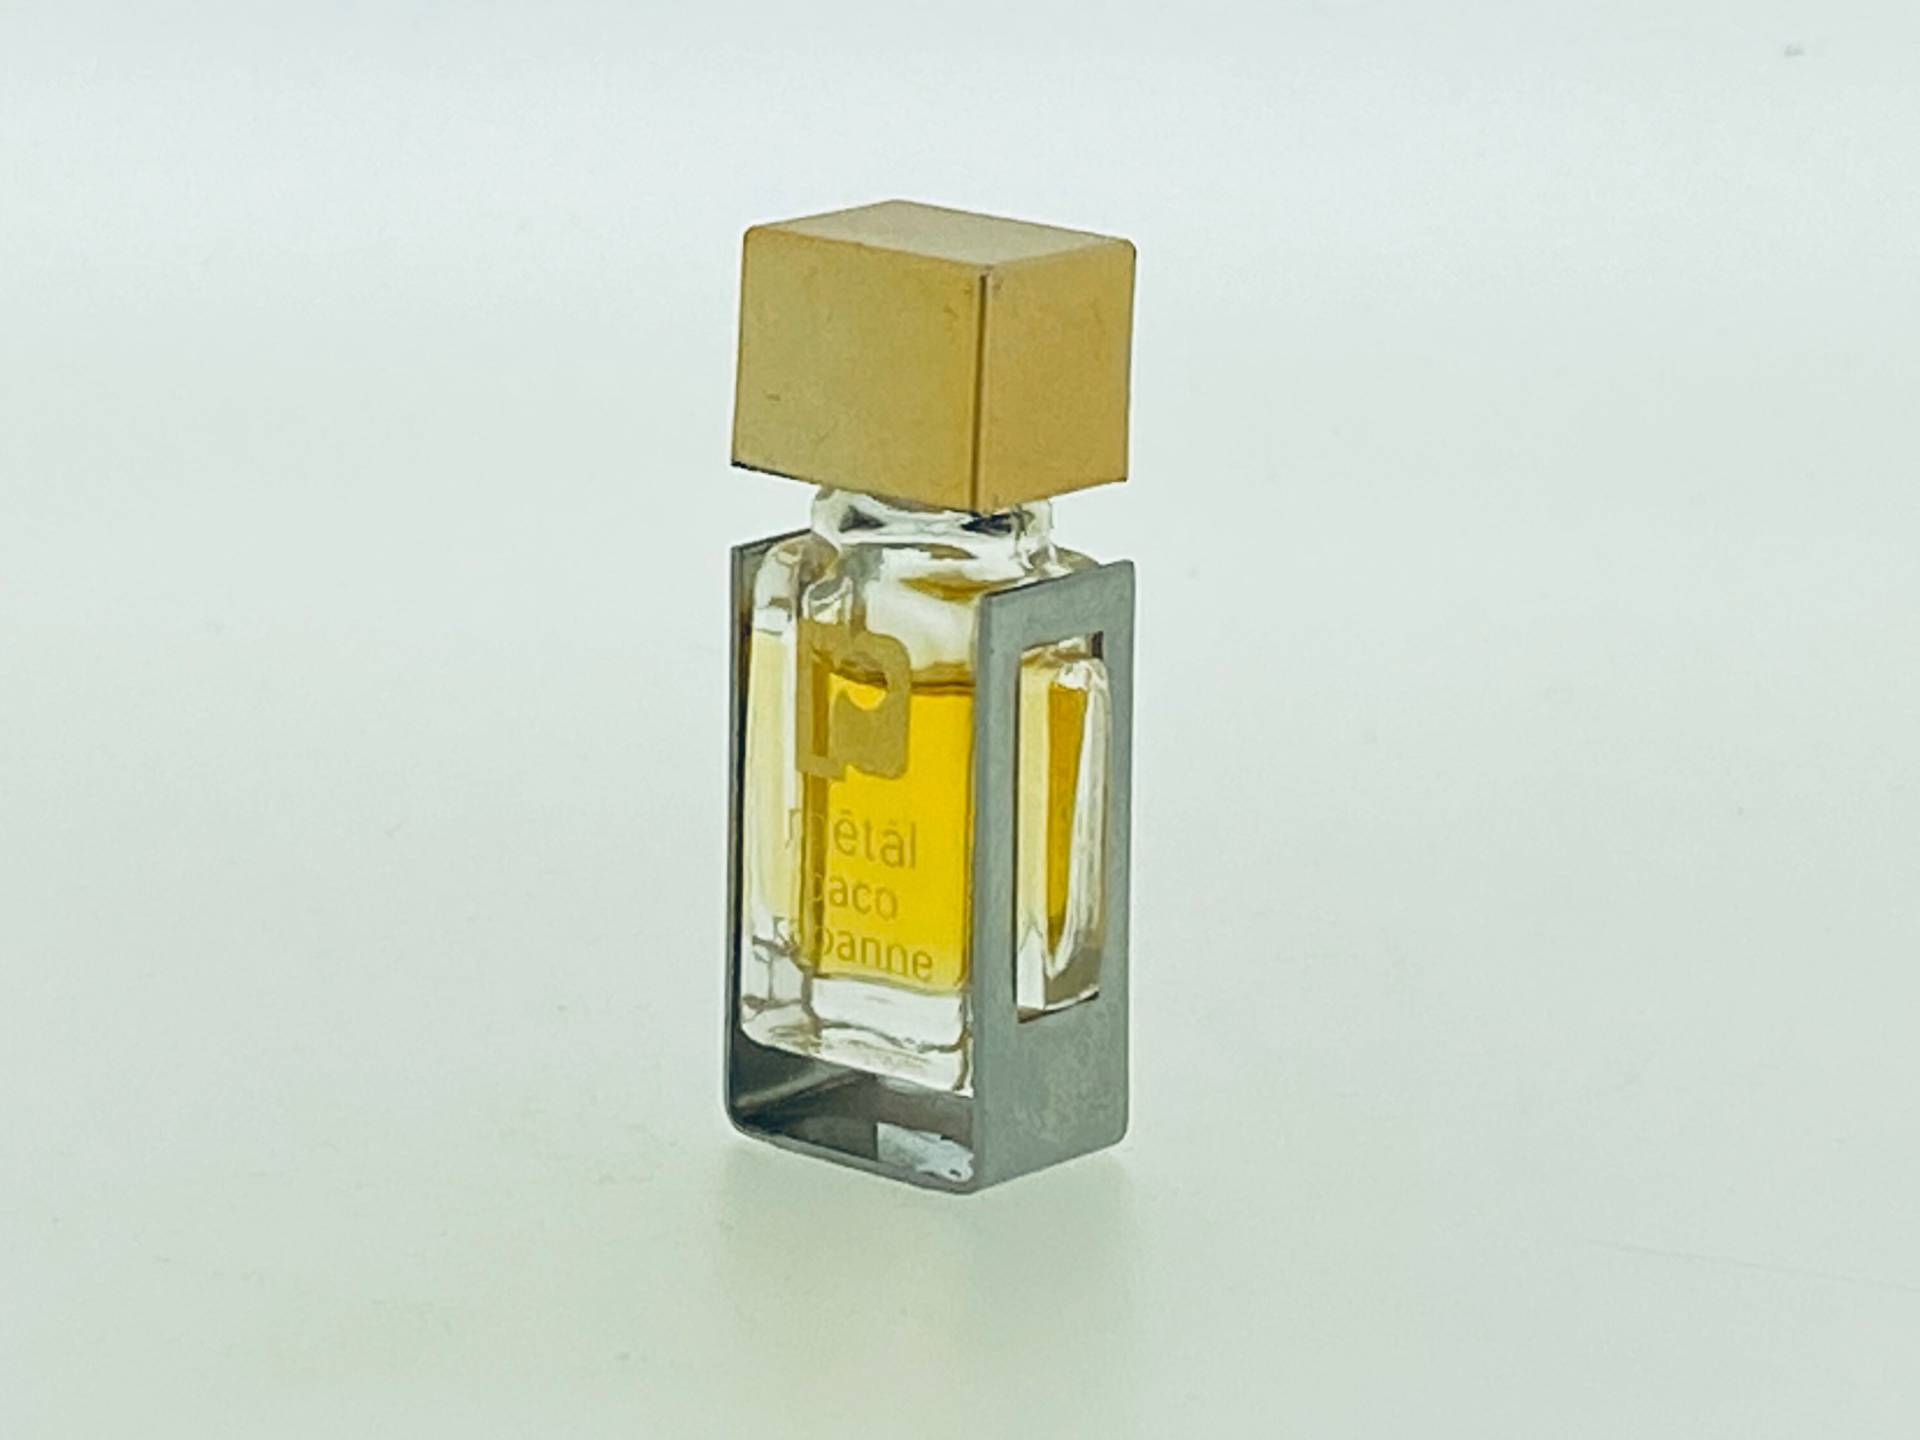 Mētāl Paco Rabanne 1979 Parfum Miniatur 2 Ml von VintagGlamour